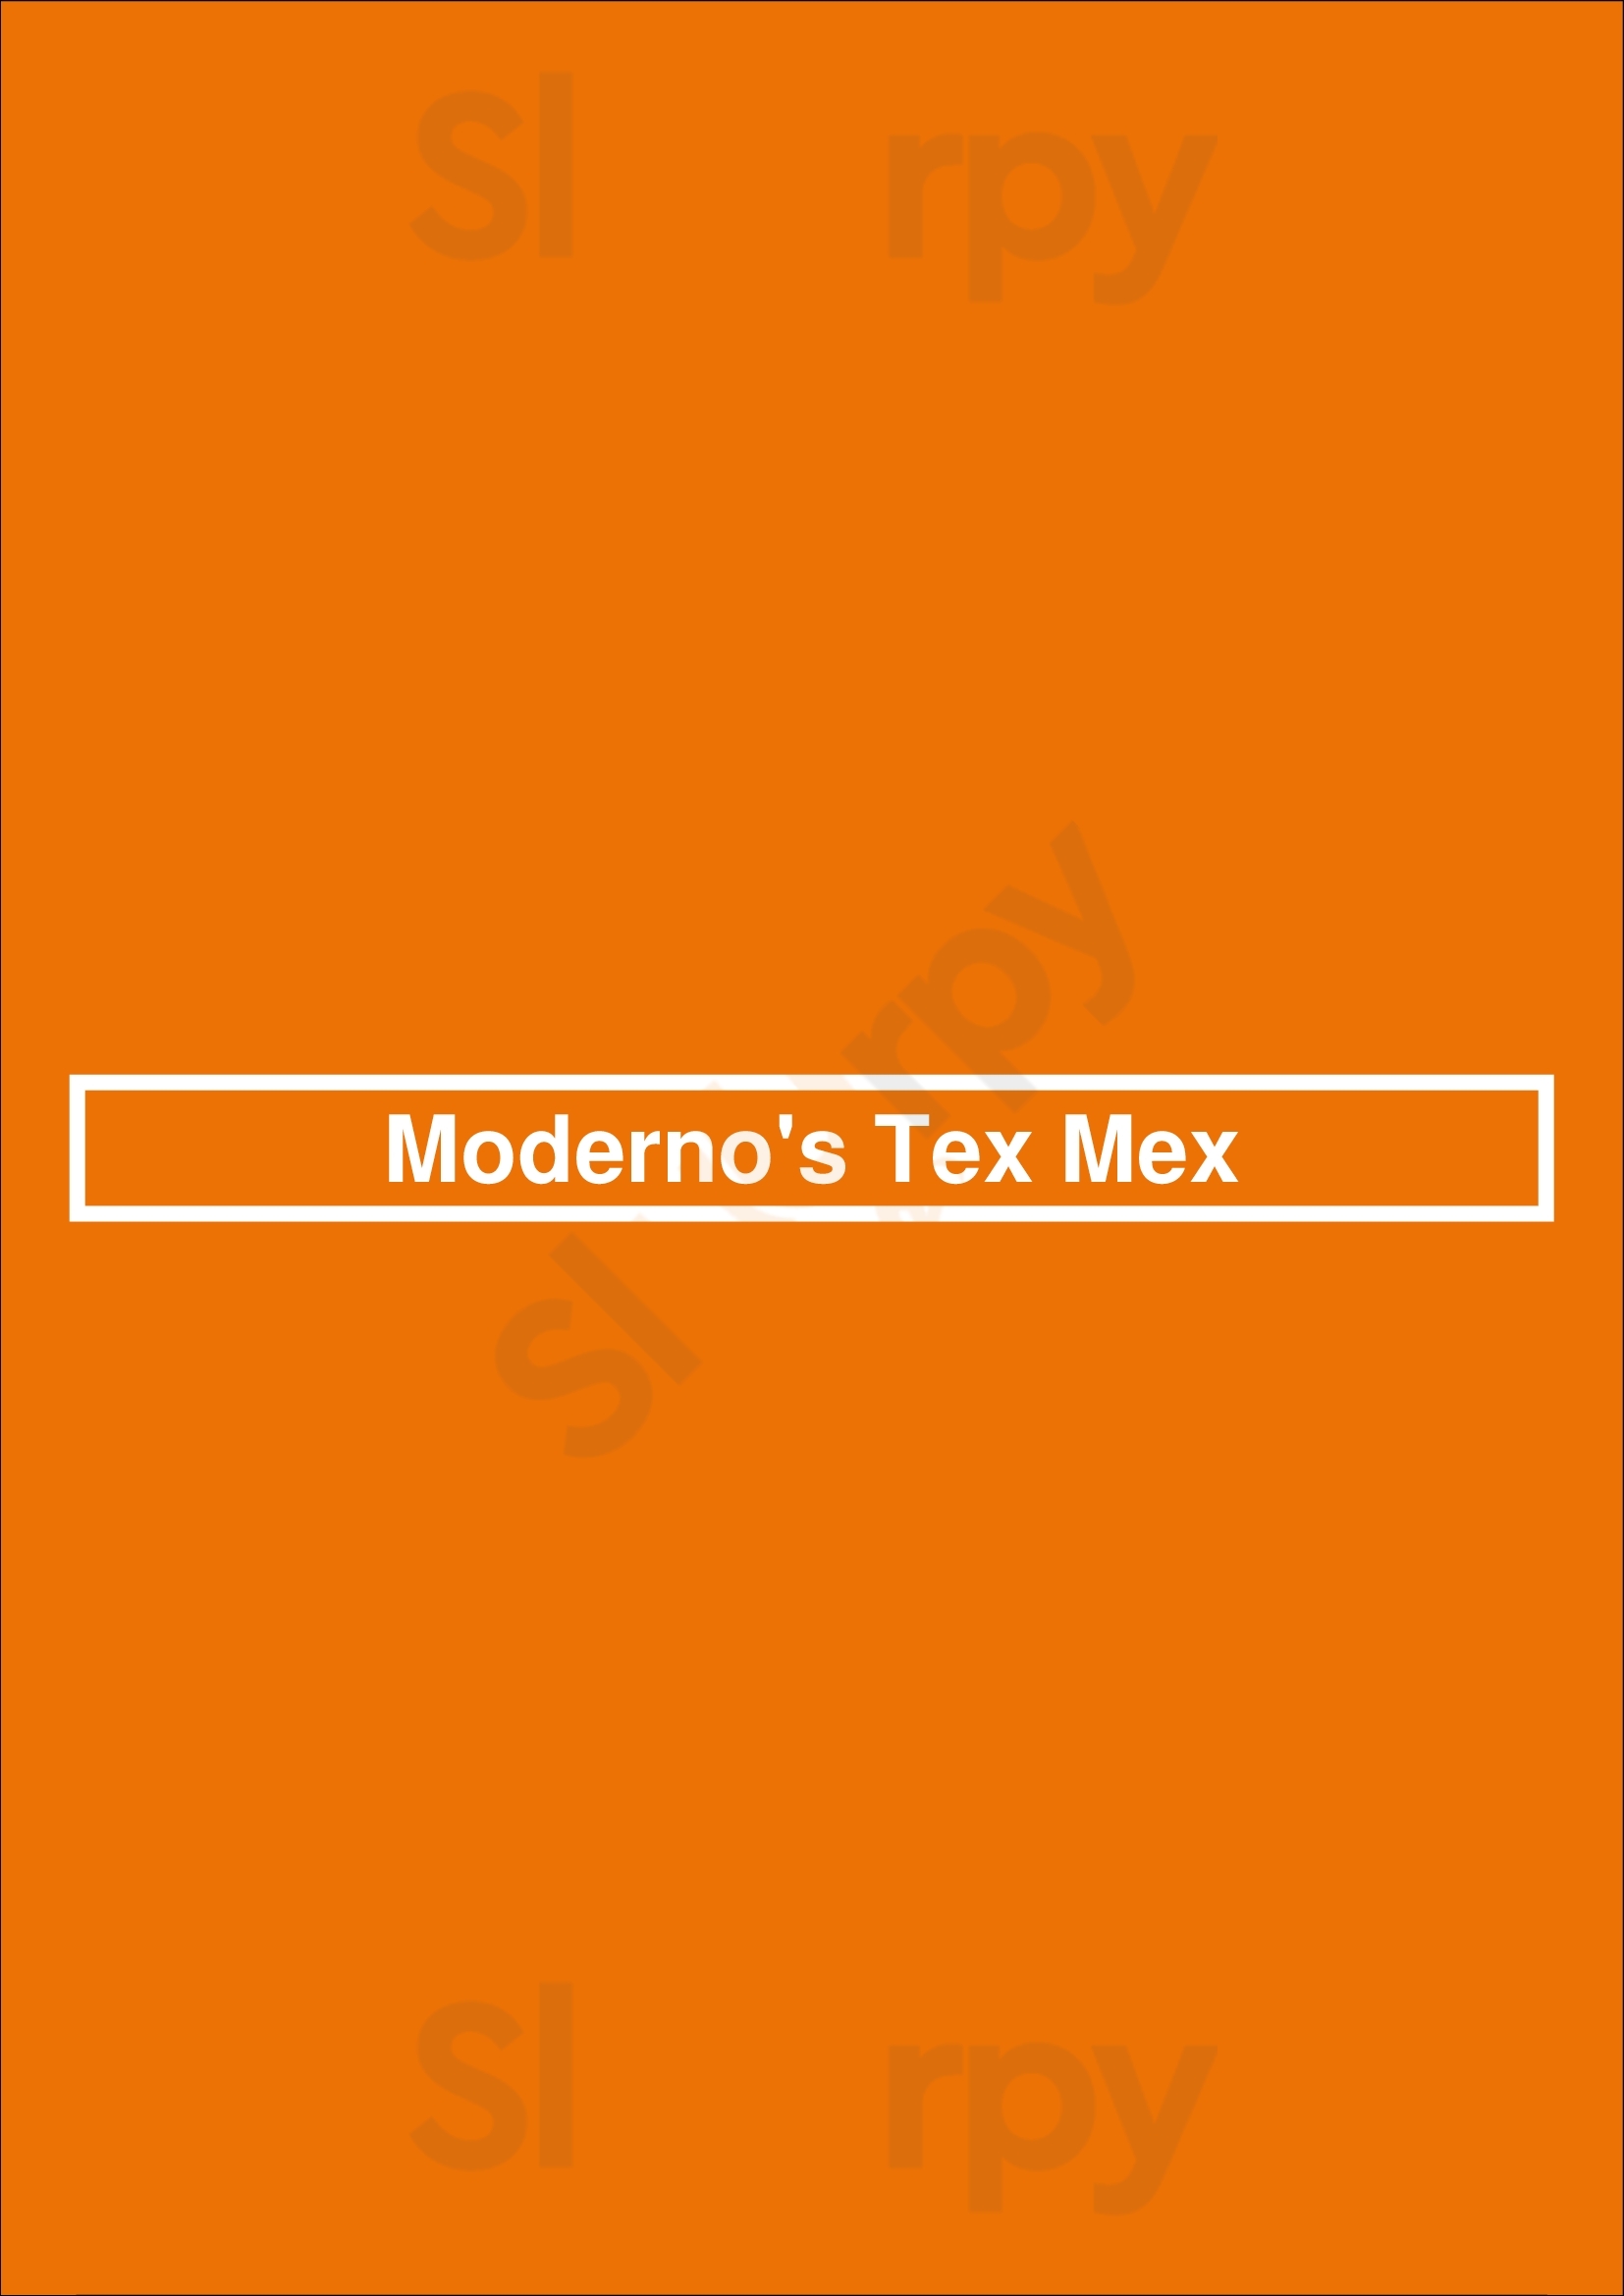 Moderno Tacos + Tex Mex Houston Menu - 1